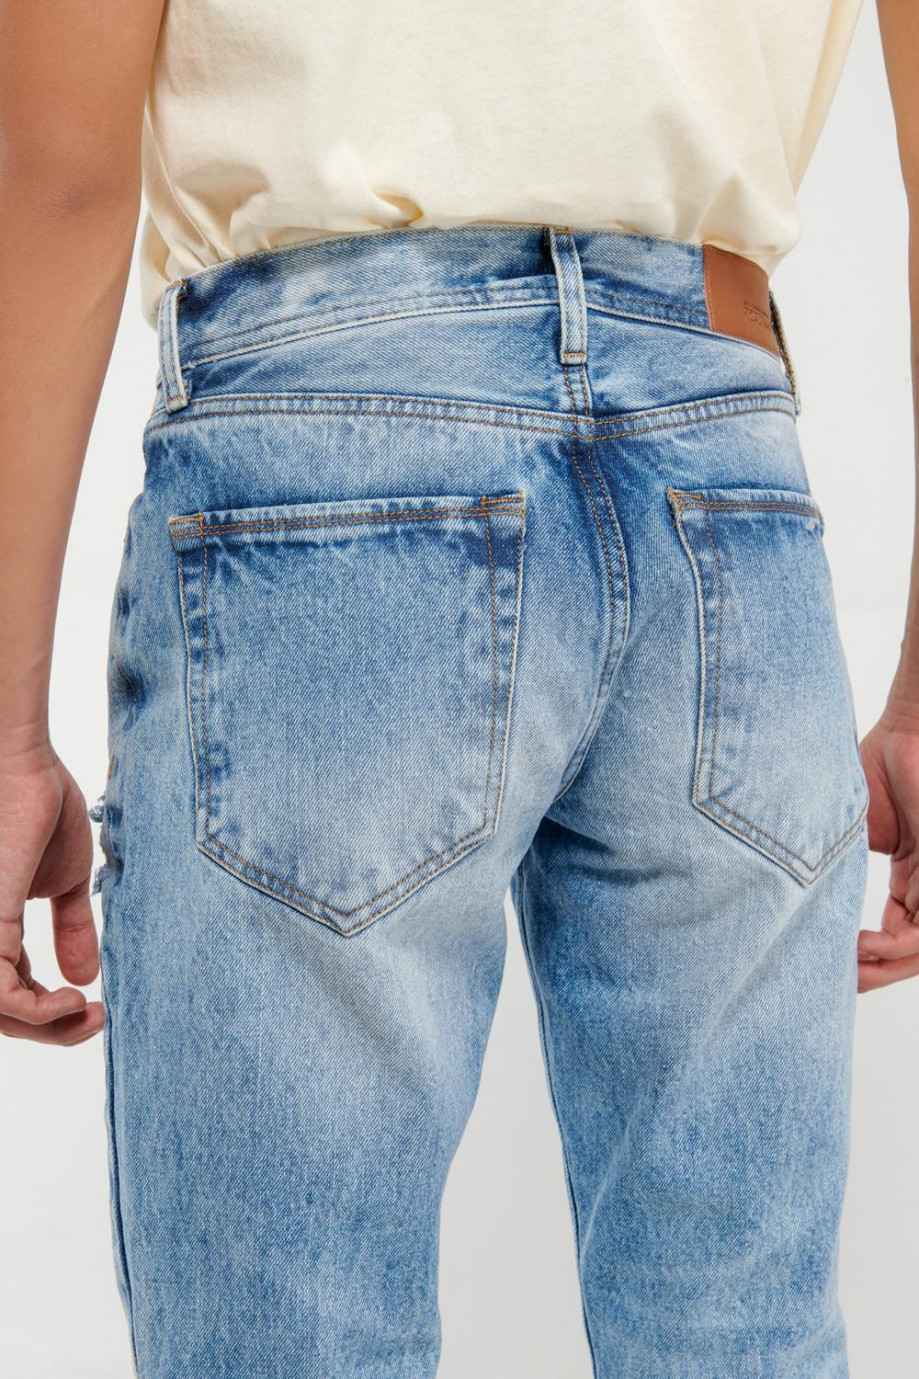 Jean azul medio tipo skinny con rotos y detalles en láser